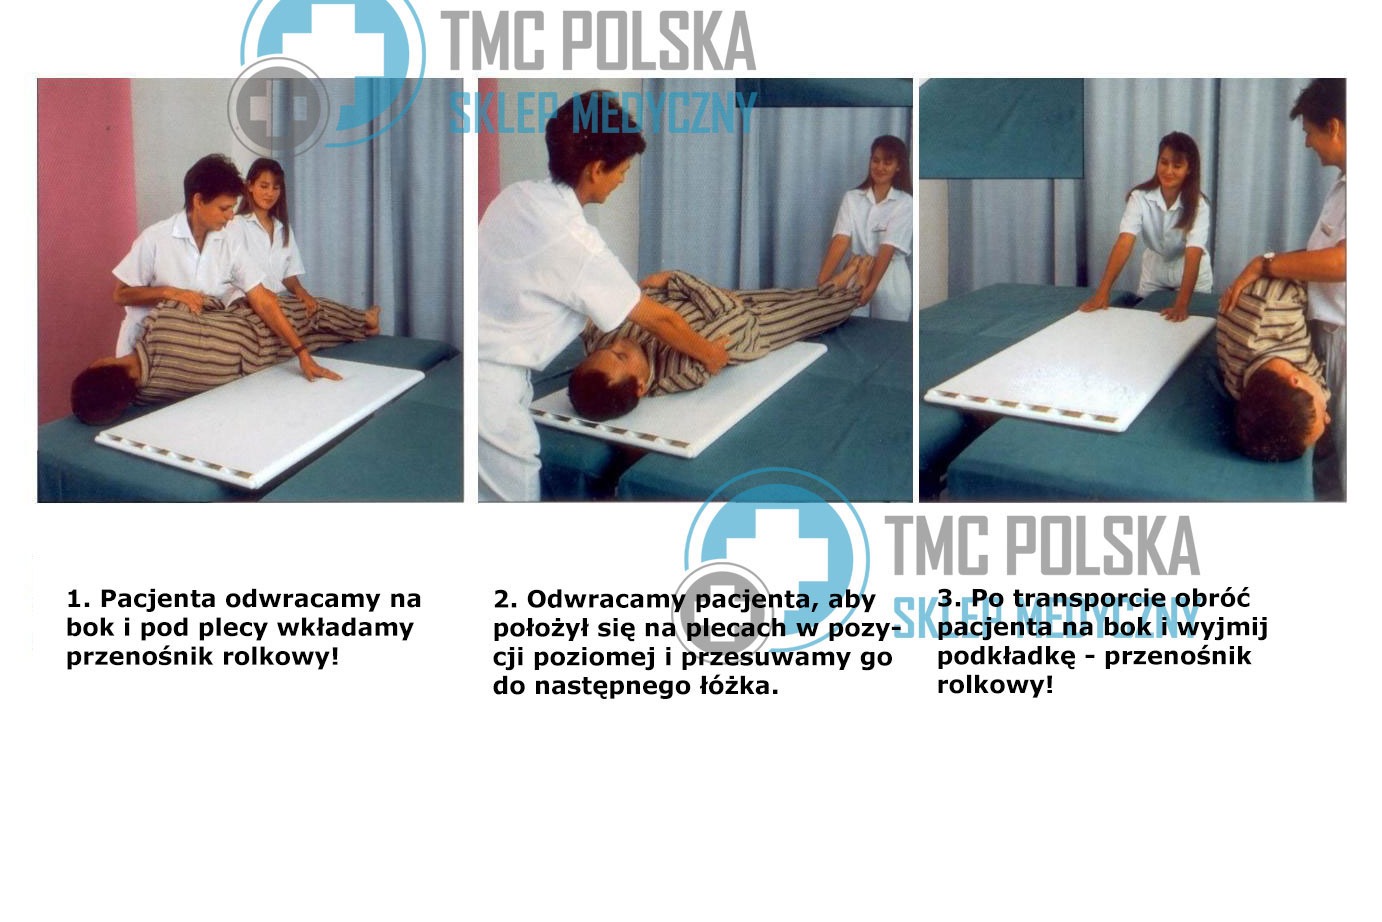 Medyczne rolki  - Przenośnik taśmowo-rolkowy, rolki do przenoszenia (przesuwania) pacjenta. Rolki - Roll board do przesuwania pacjentów. 